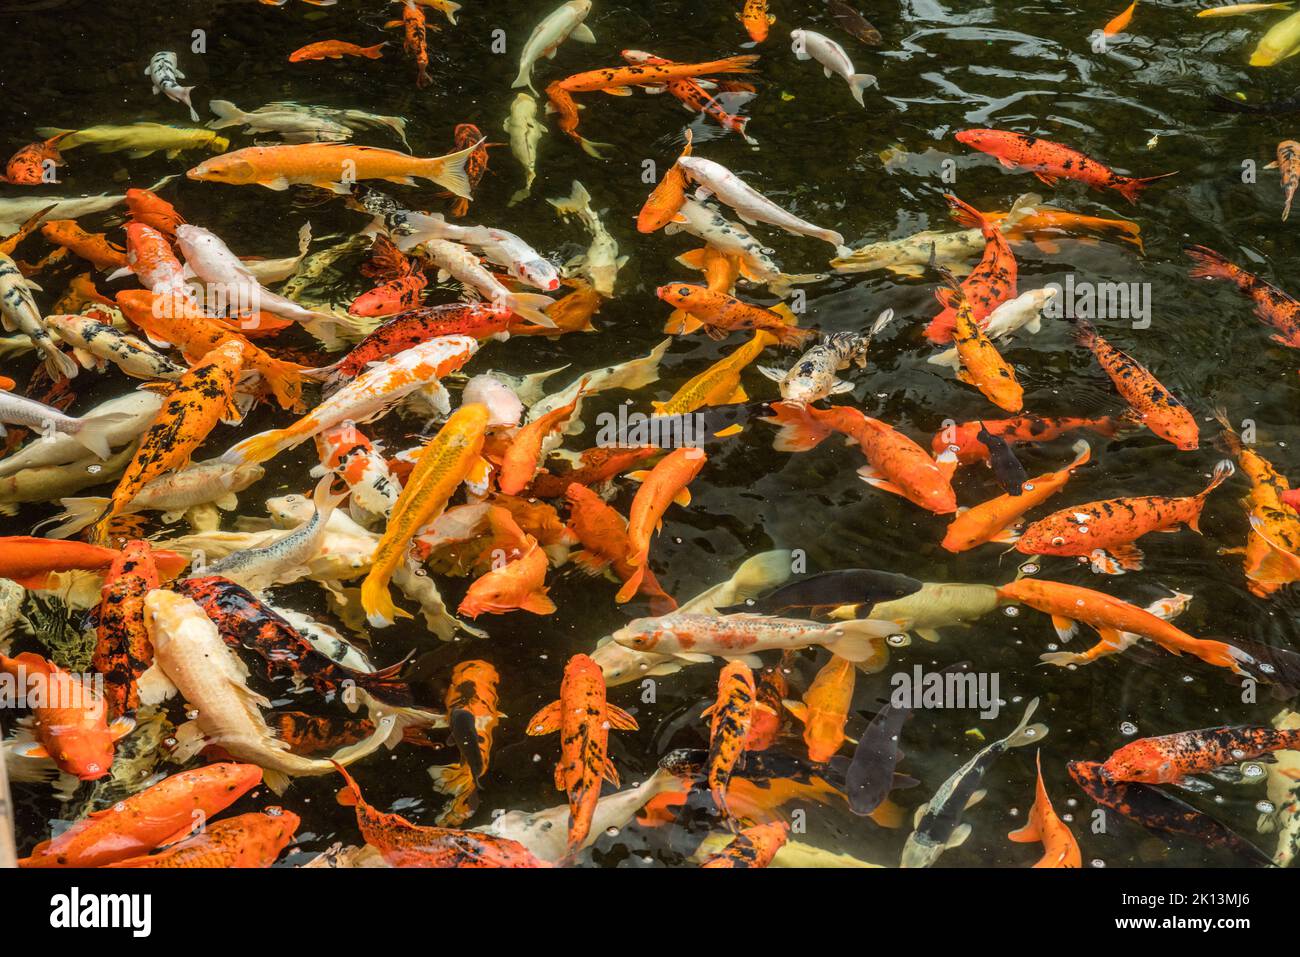 Beaucoup de carpes asiatiques colorées nageant dans l'eau. Banque D'Images